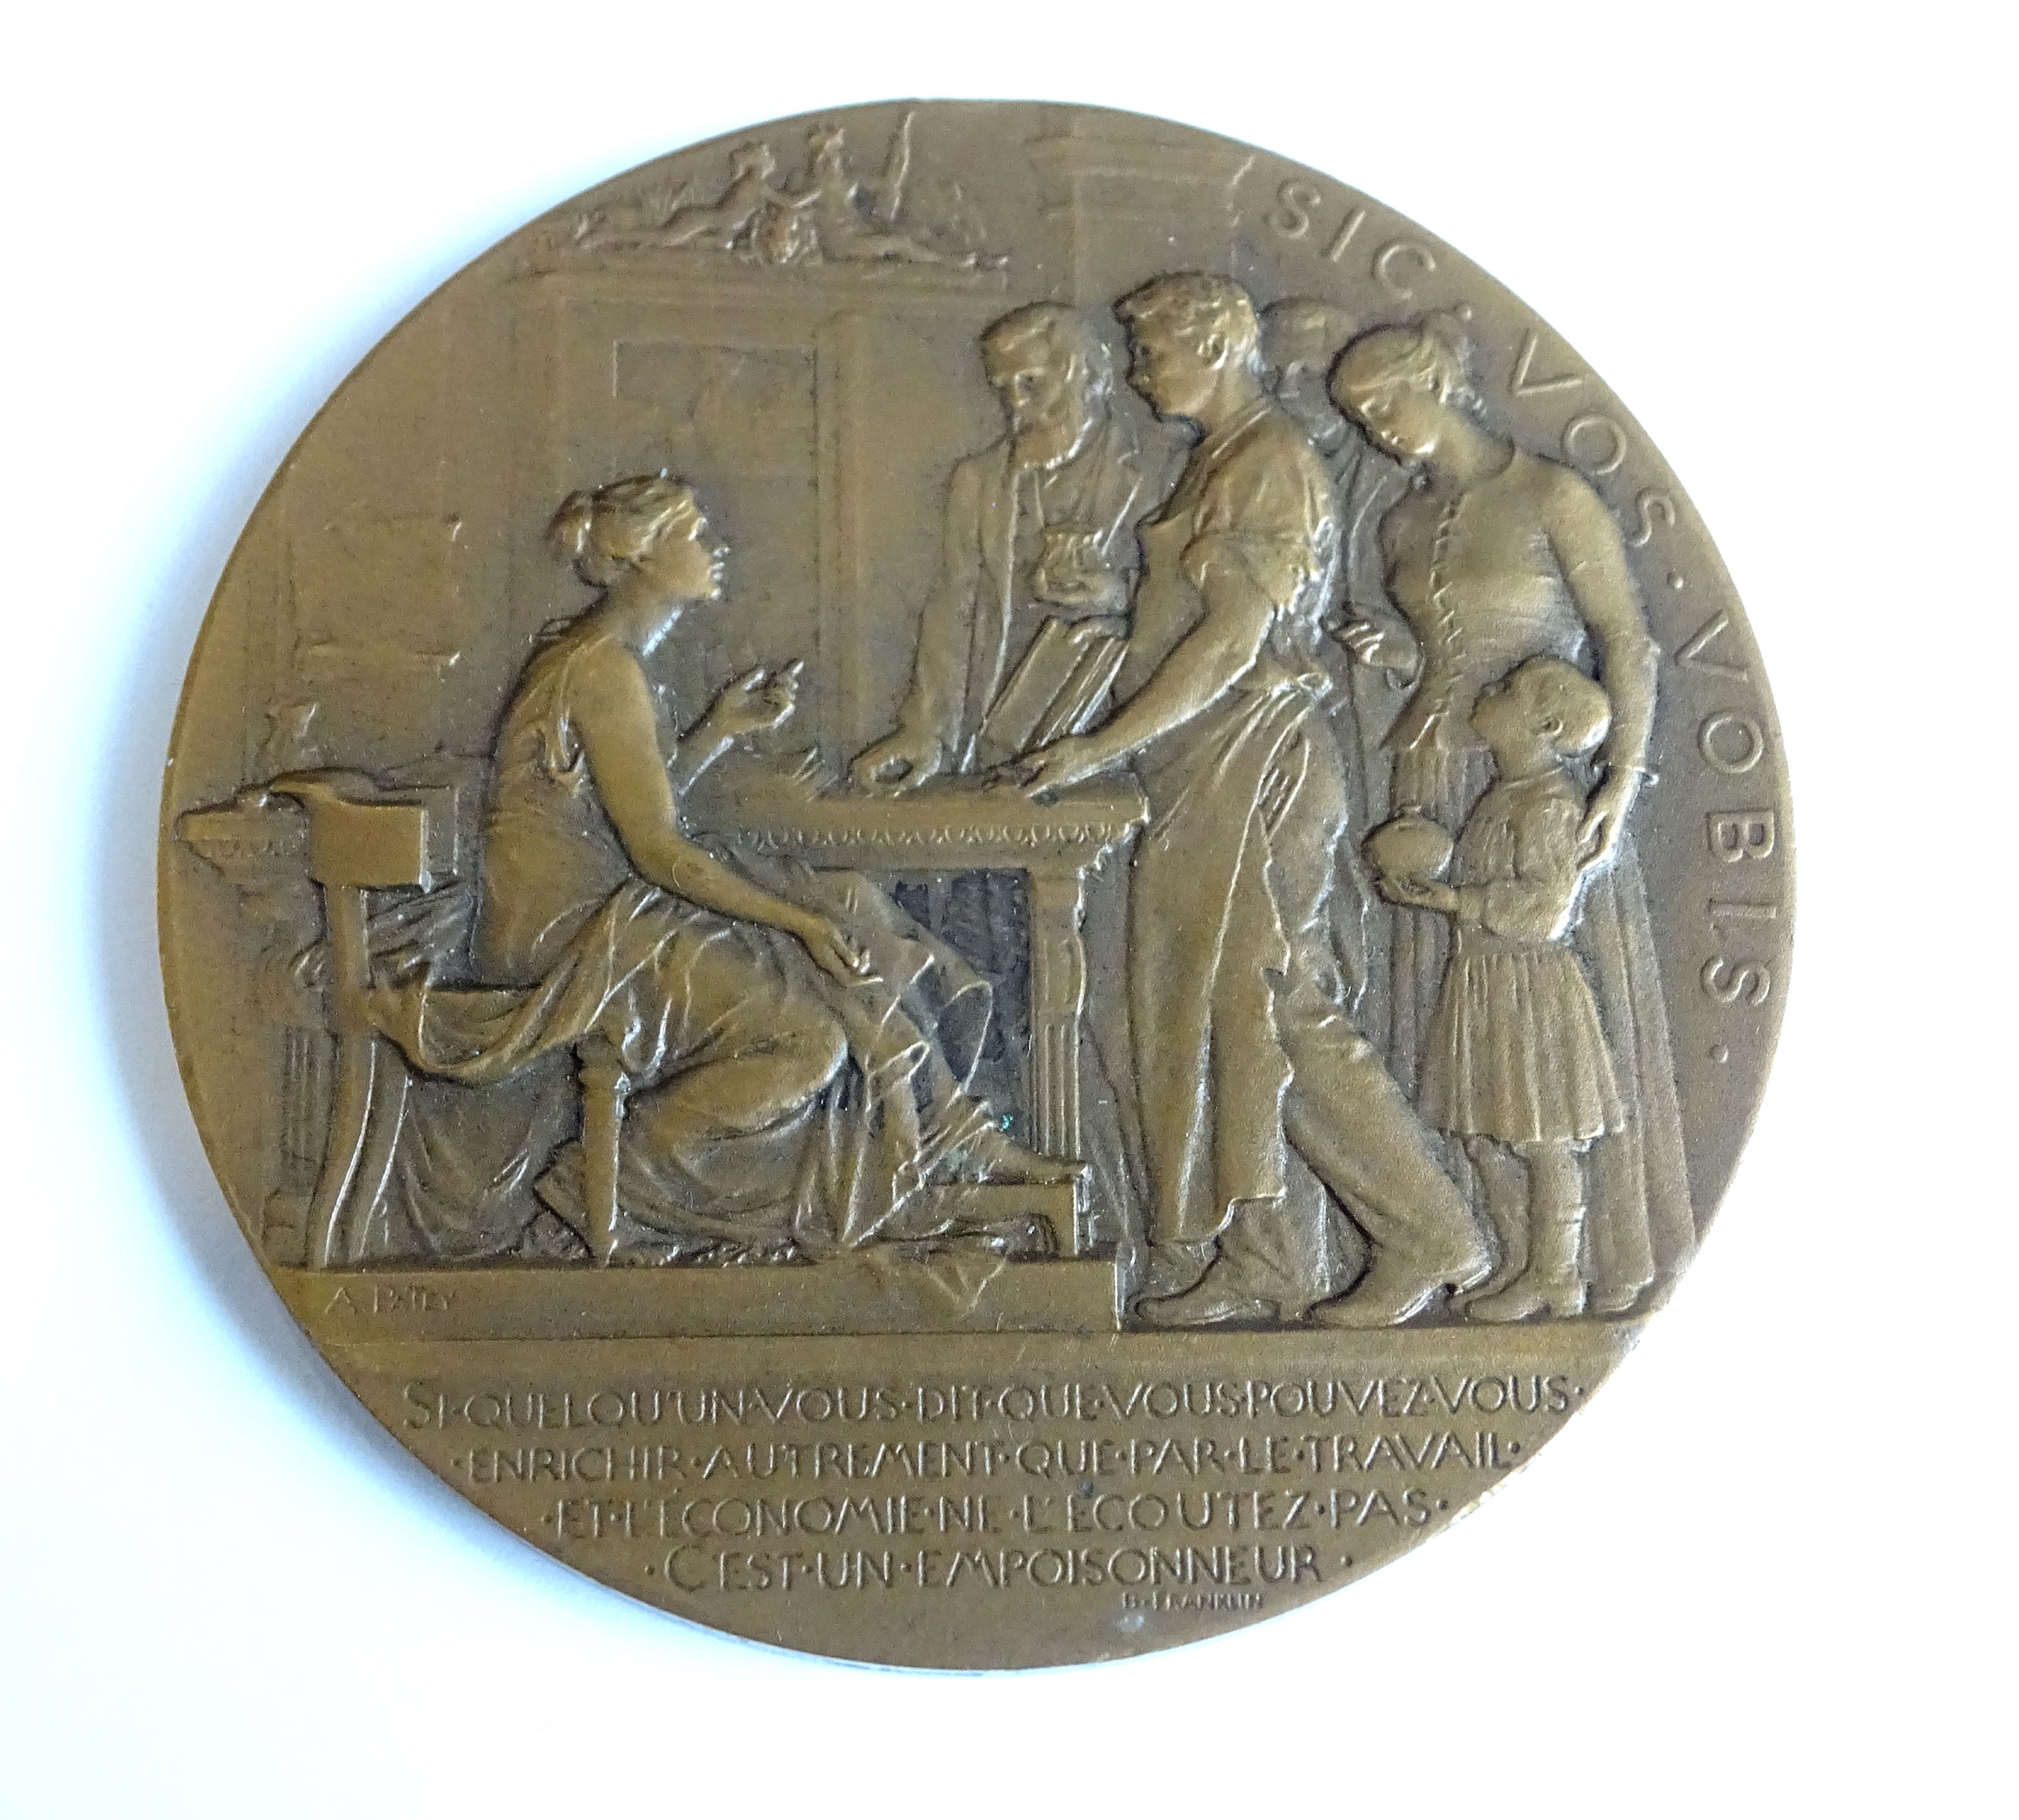 Médaille bronze  Gros module   Caisse d'épargne et de prévoyance du Rhône  Patey